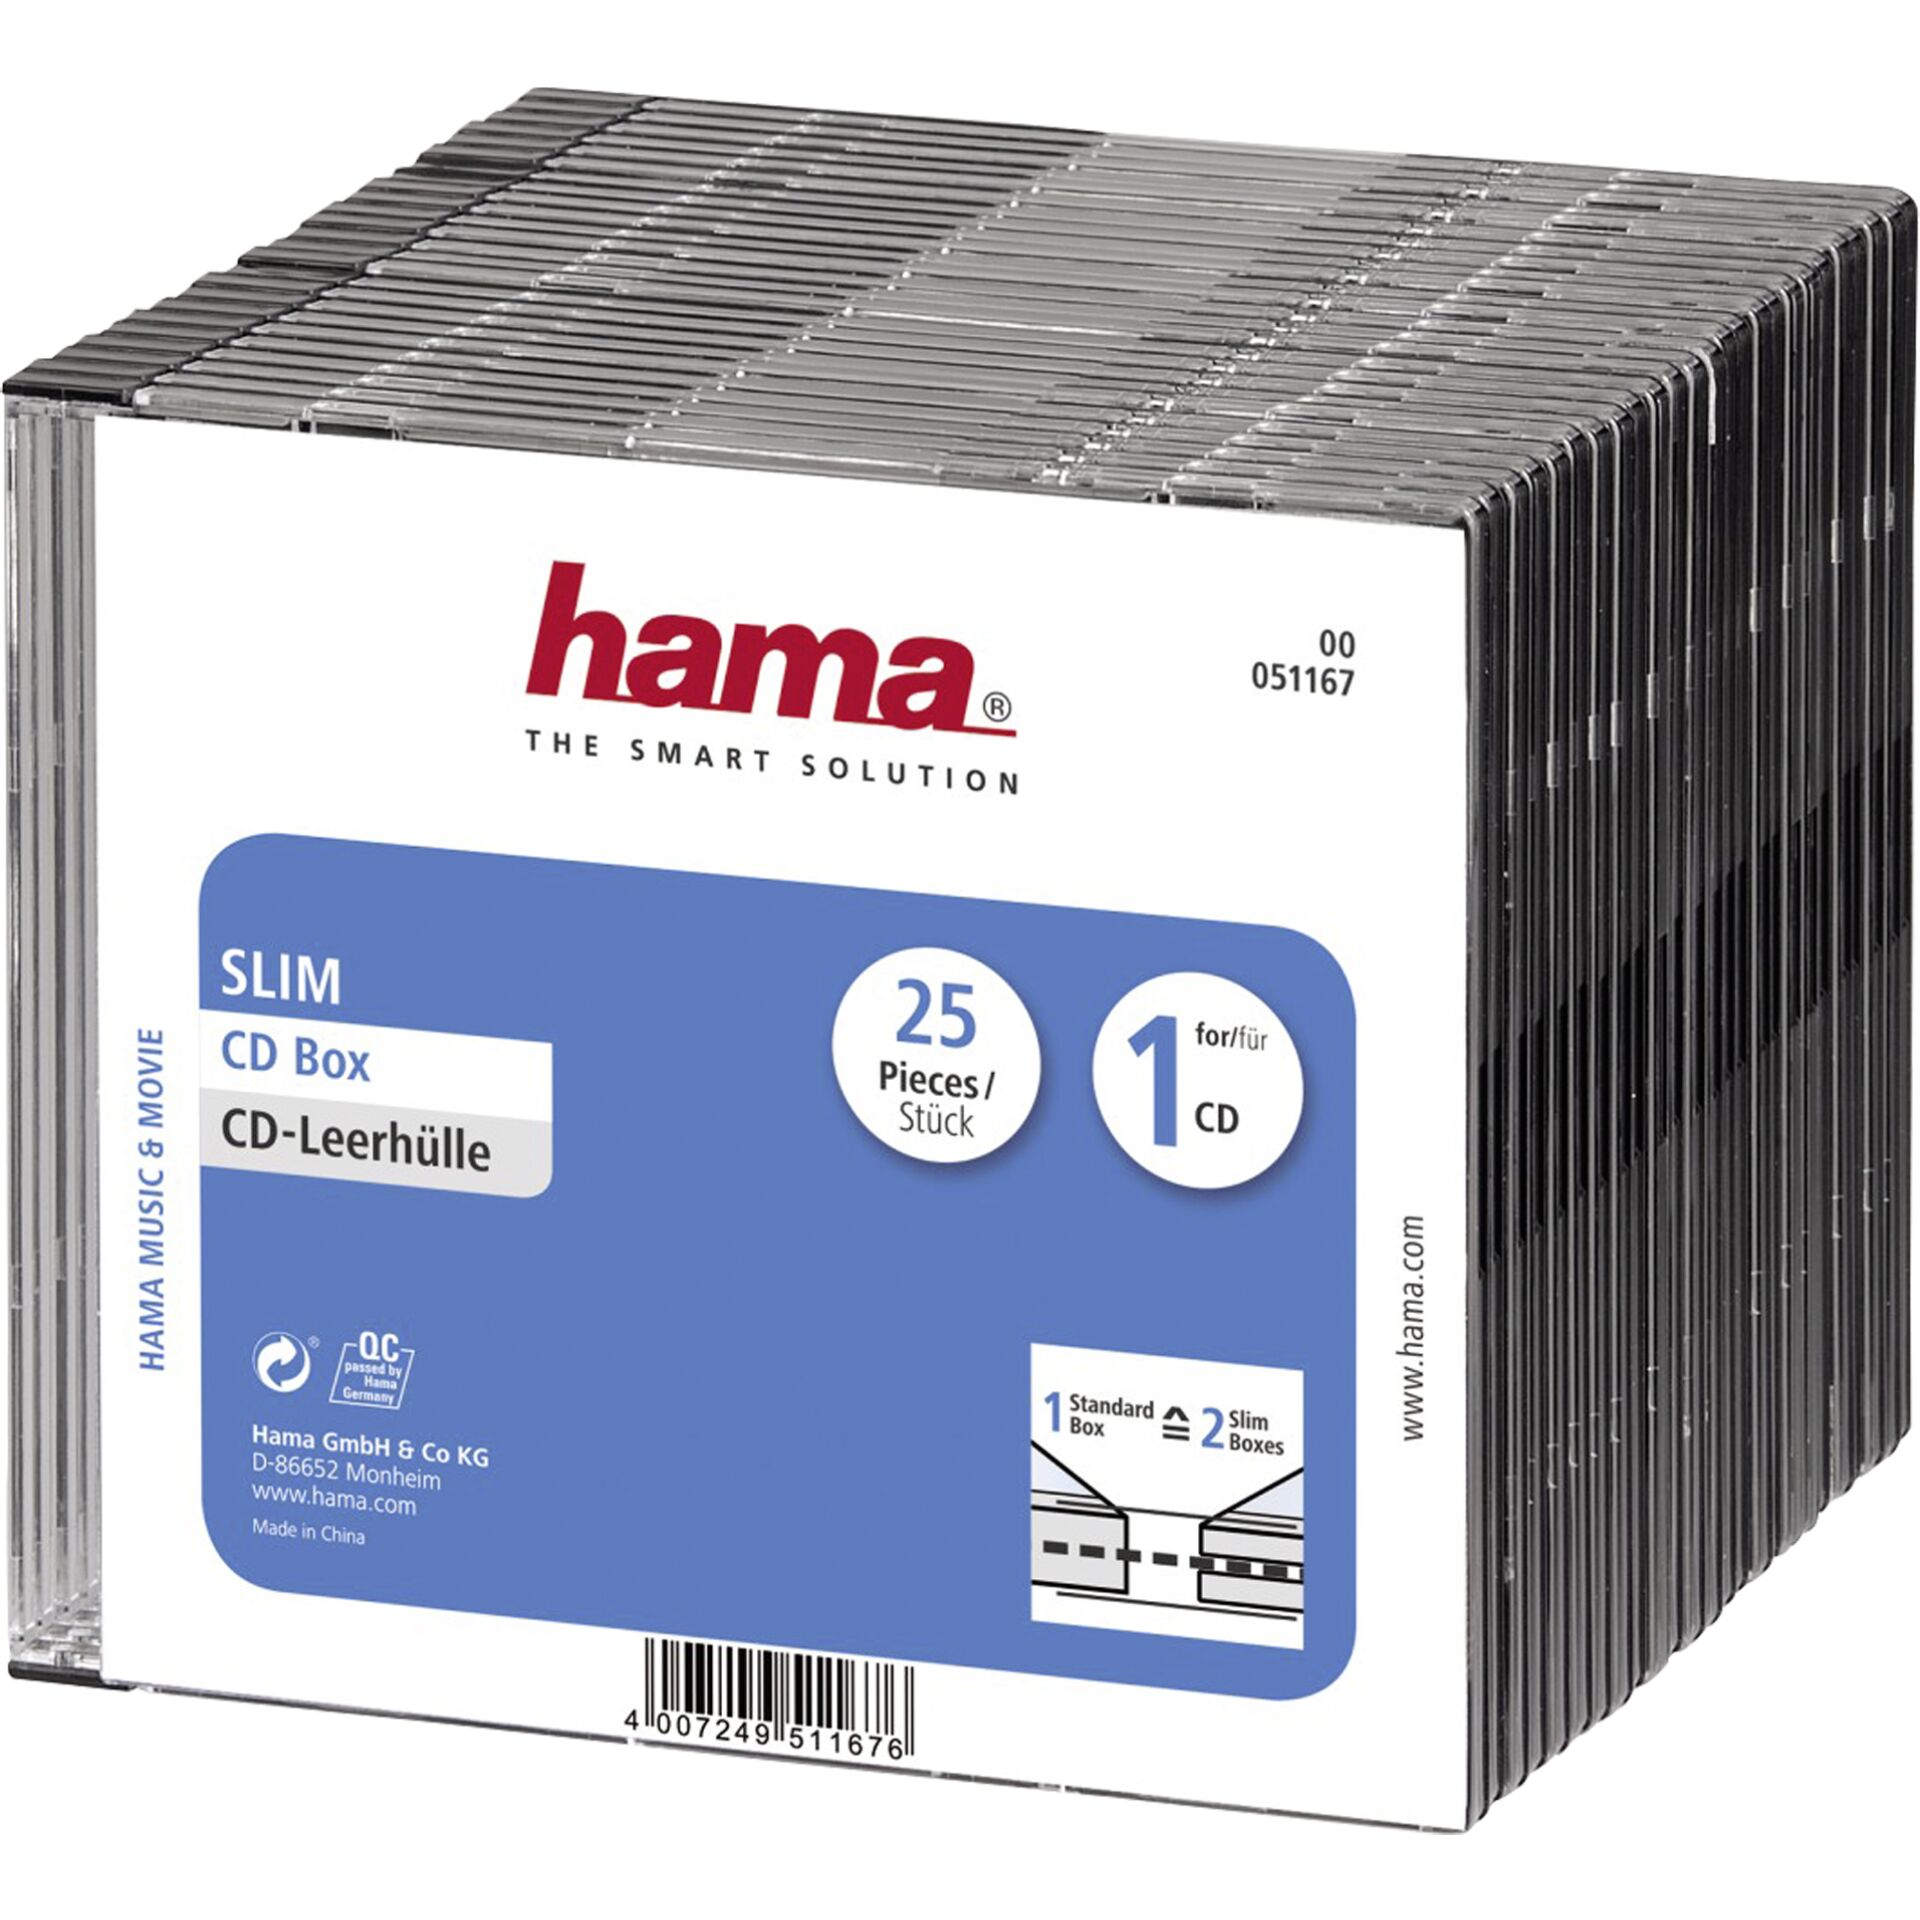 1x25 Hama CD-Leerhülle CD-Box- Slim Schwarz               51167